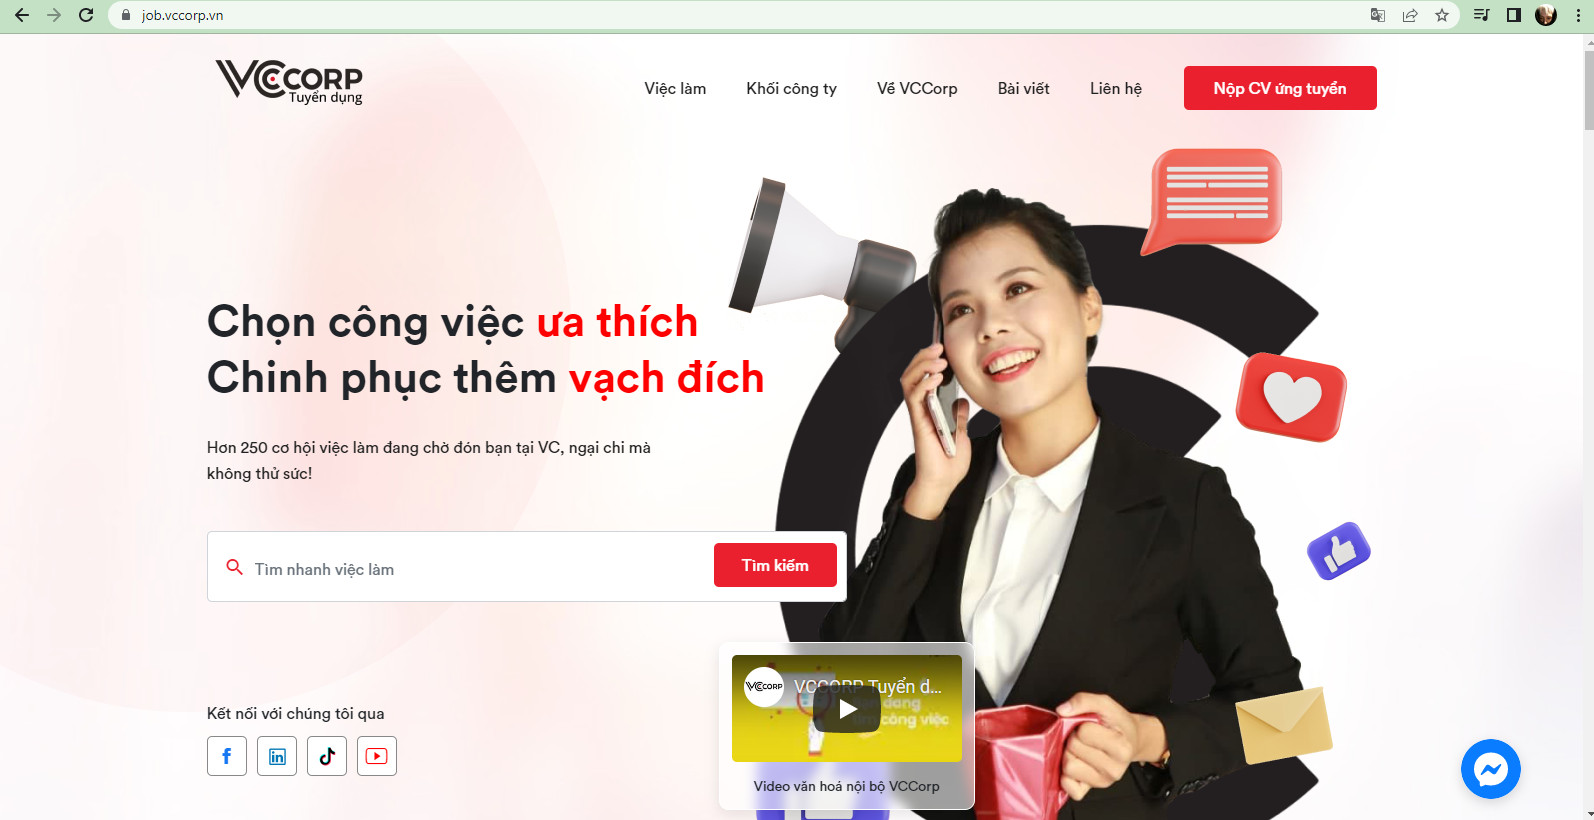 Job.Vccorp.vn - Website tuyển dụng chính thức của VCCorp